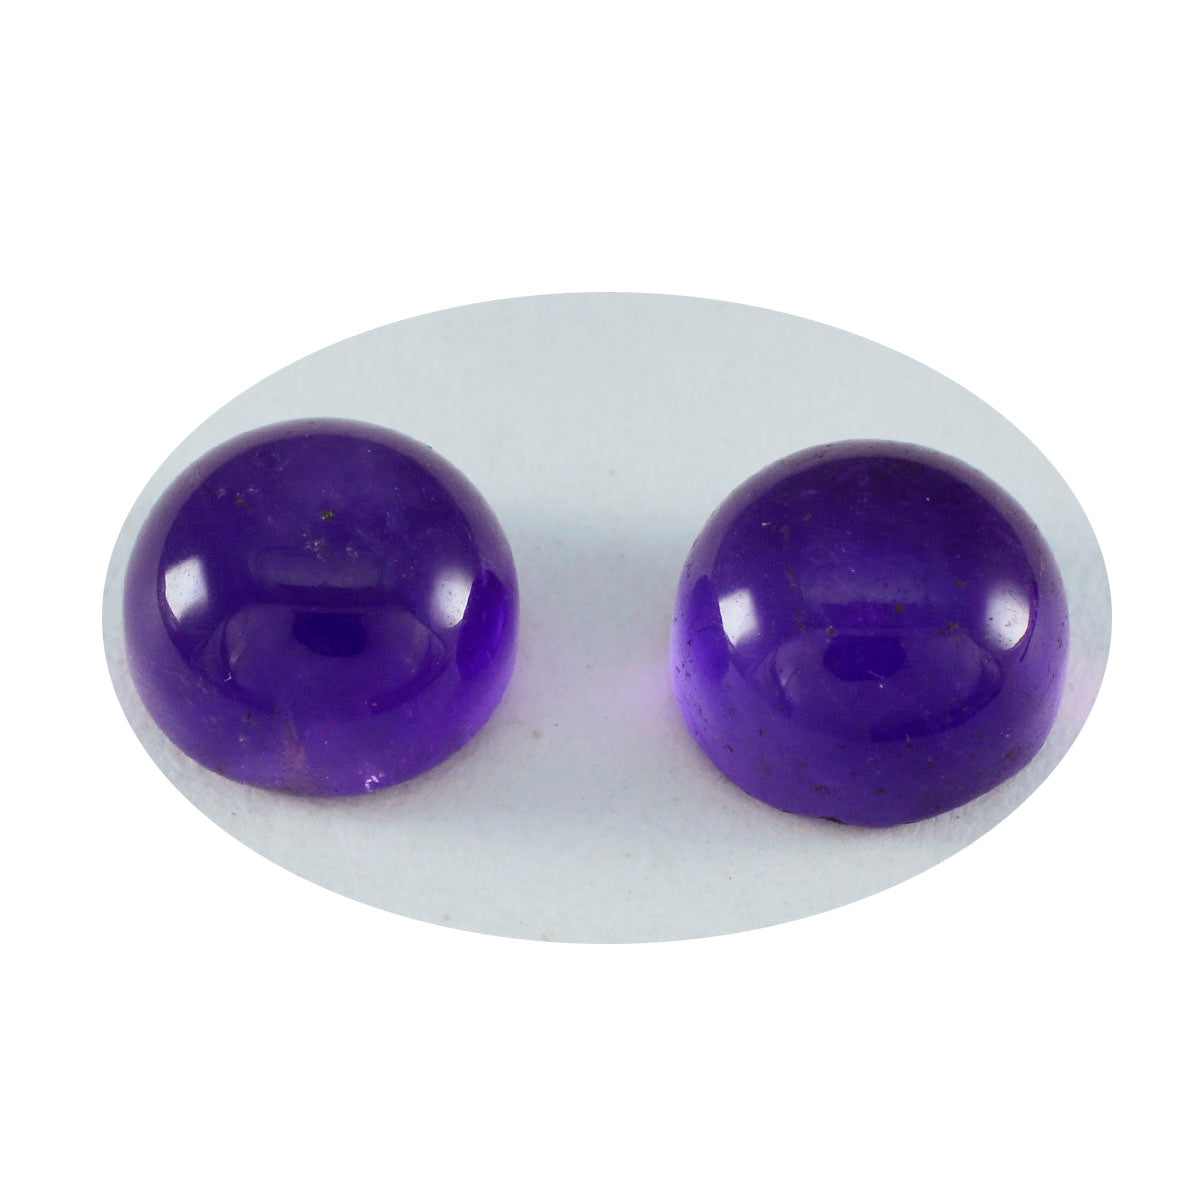 riyogems 1pc cabochon d'améthyste violette 9x9 mm forme ronde a pierres précieuses de qualité